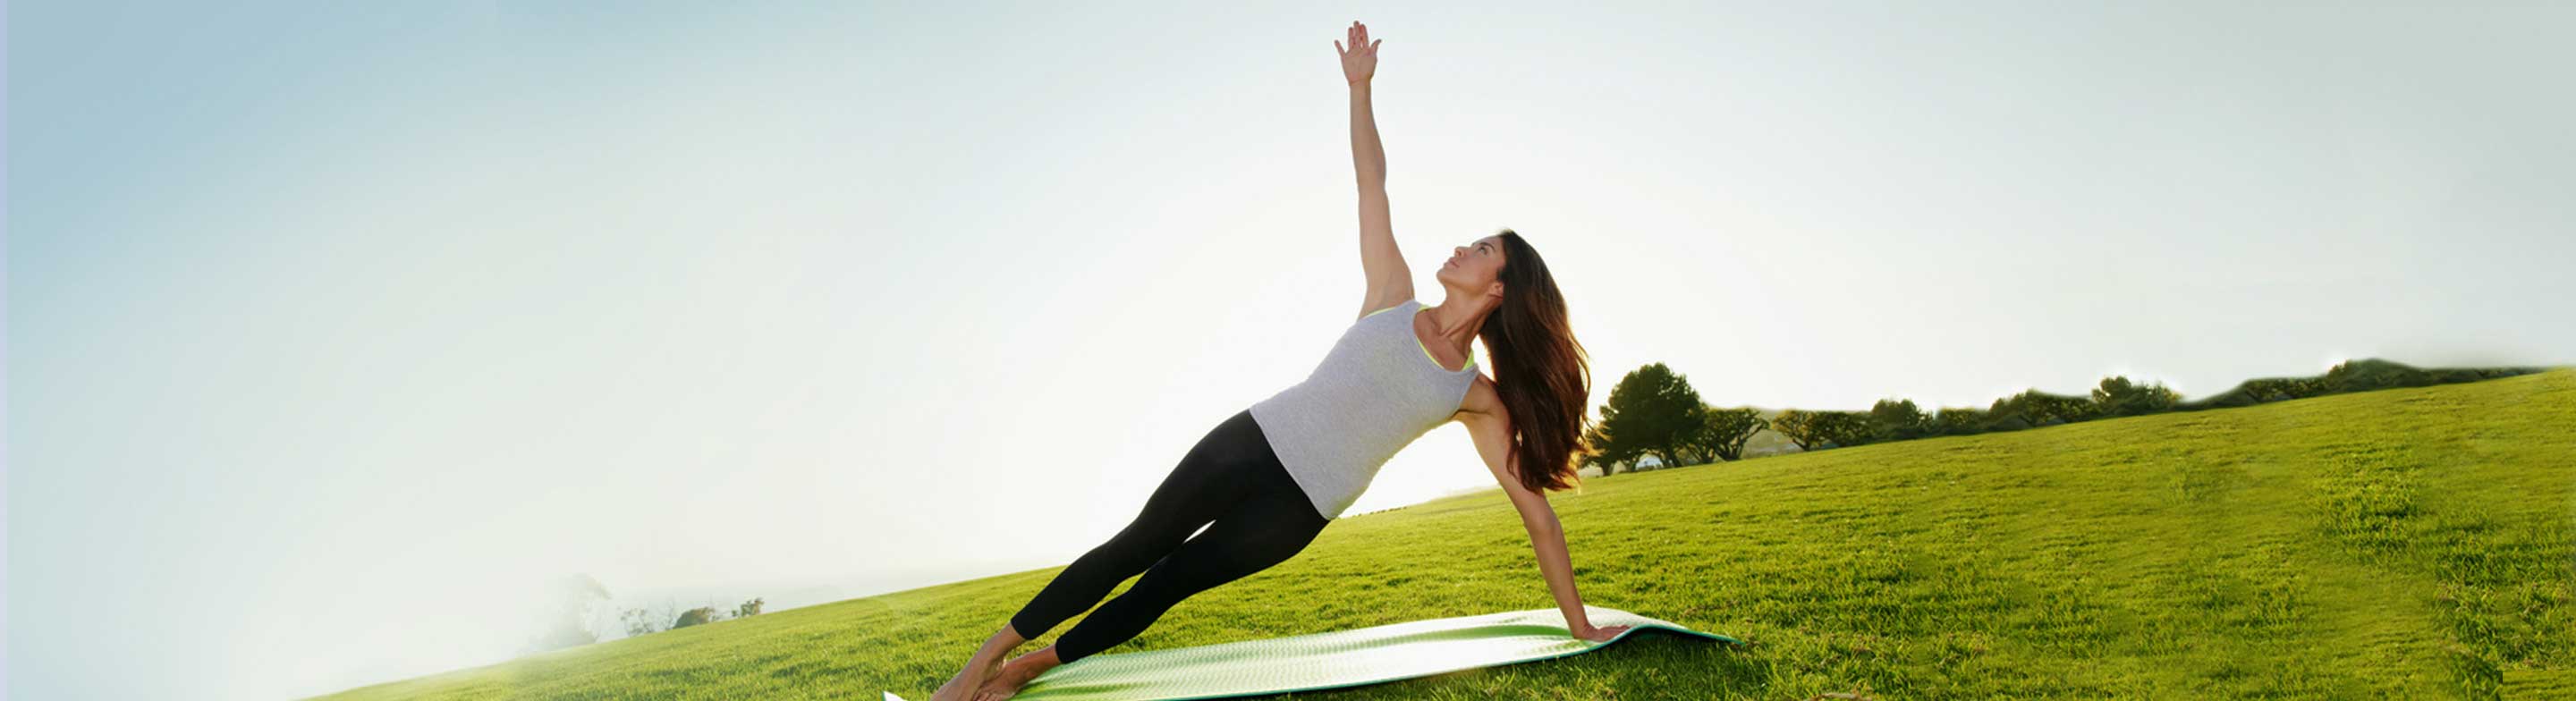 Mujer realizando ejercicios sencillos para recuperar energía